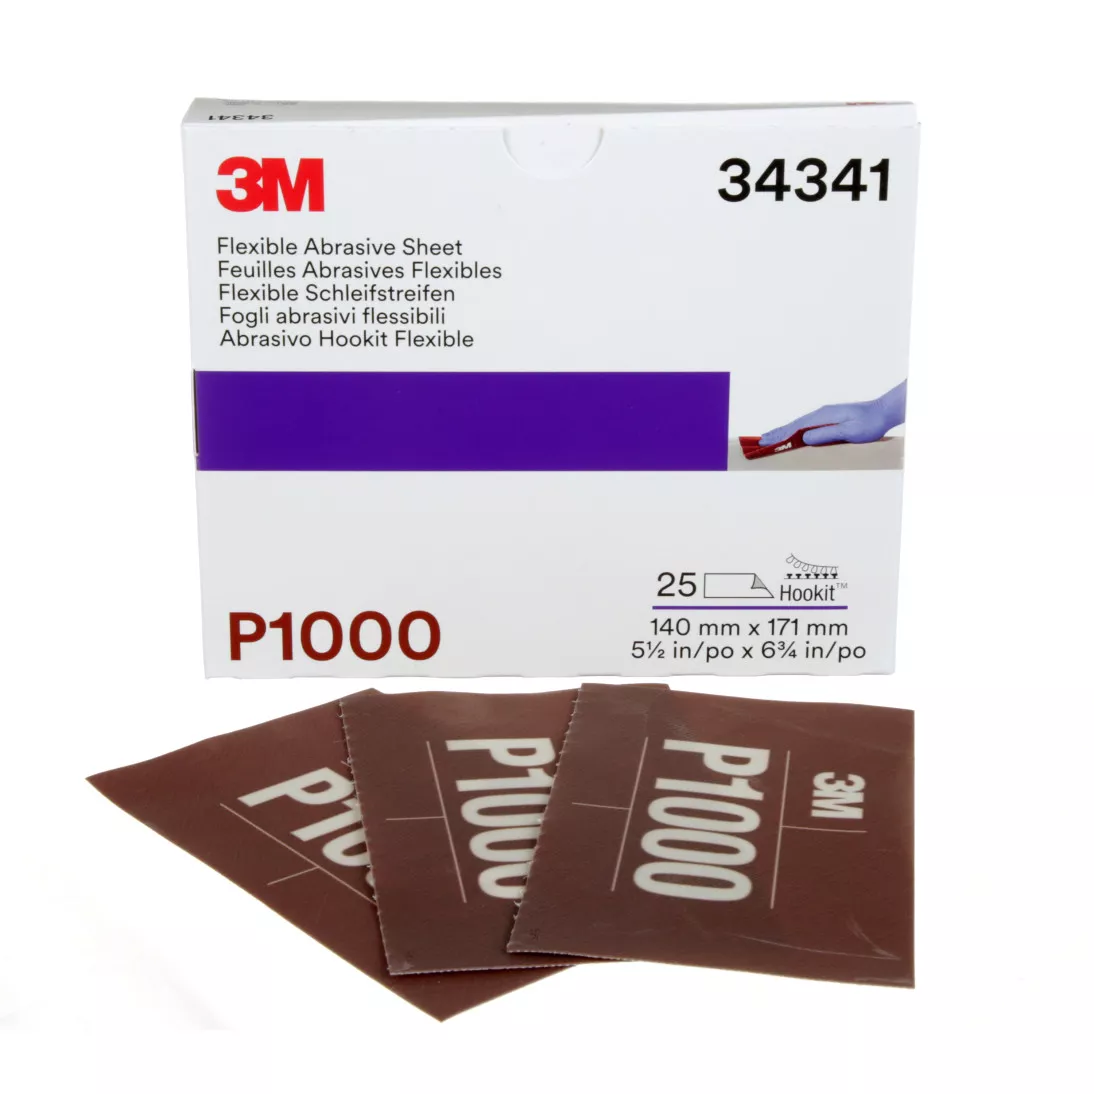 3M™ Hookit™ Flexible Abrasive Sheet, 34341, P1000, 5.5 in x 6.8 in, 25
sheets per carton, 5 cartons per case